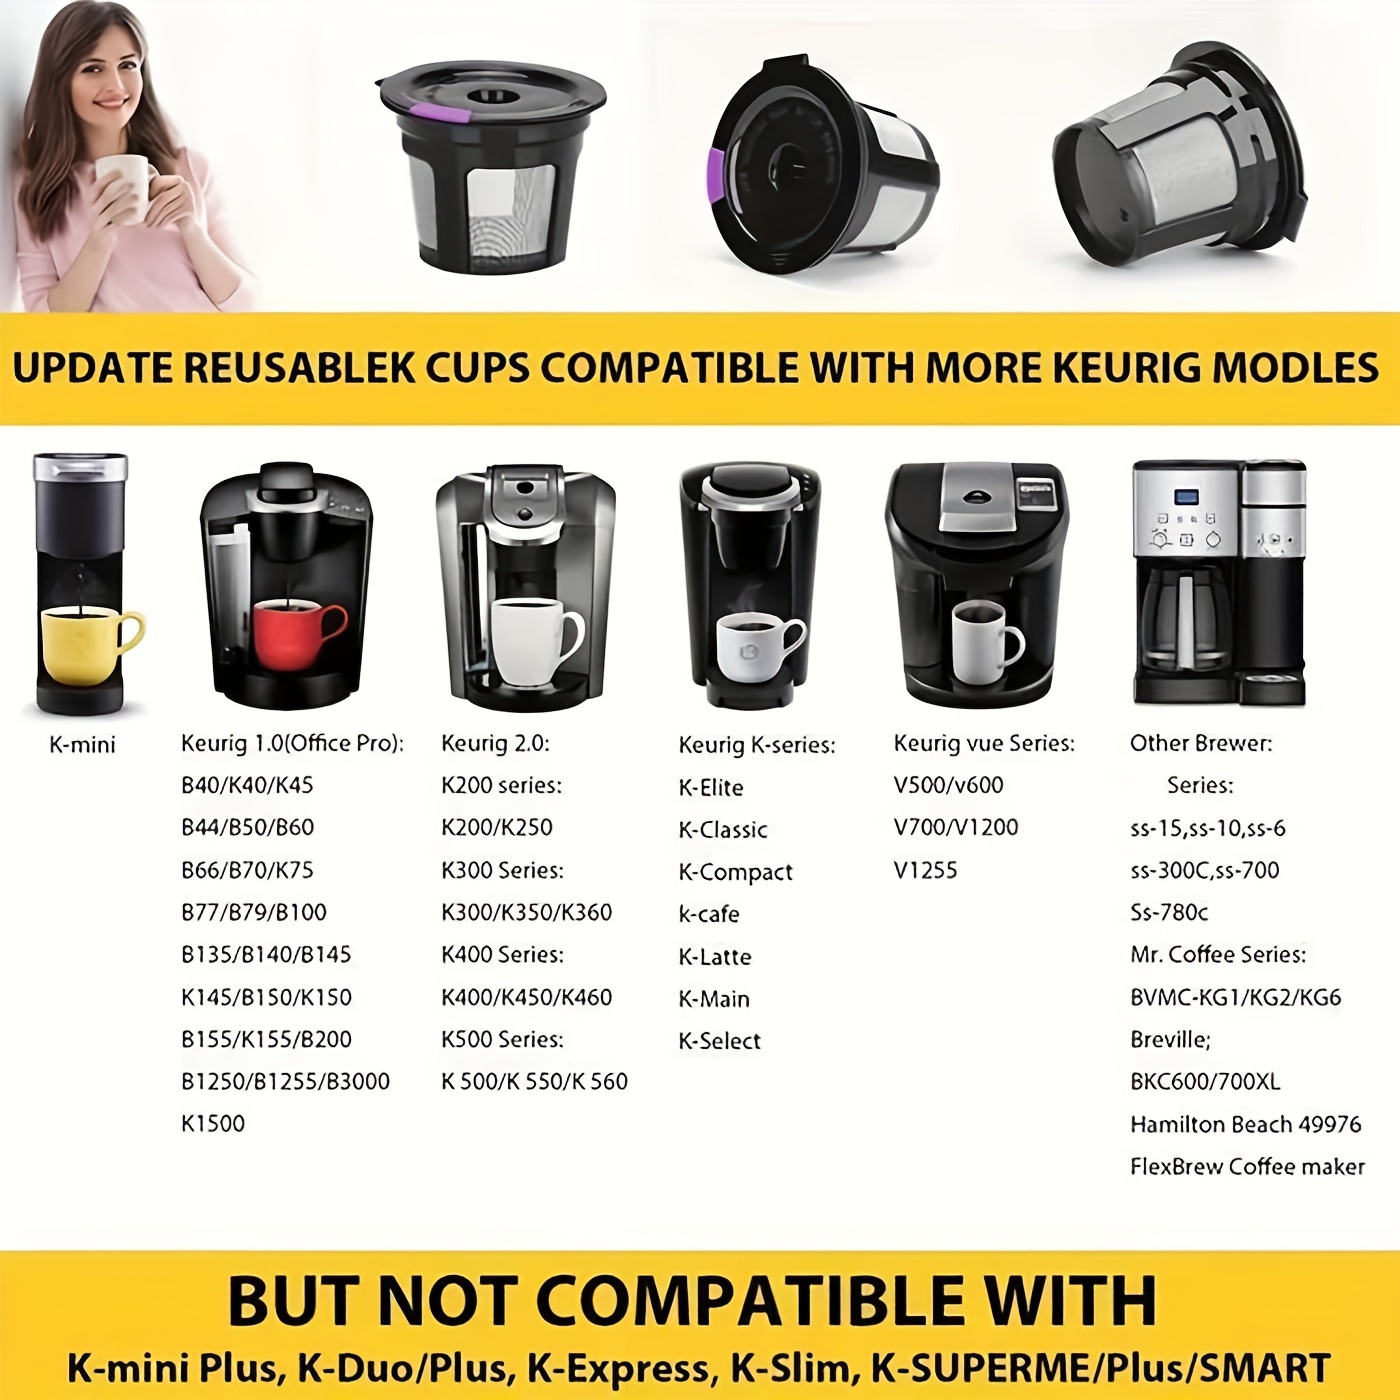 Filtro de cápsulas de café K-cup reutilizable, filtro K-cup recargable  universal de acero inoxidable para cafeteras Keurig 2.0 y 1.0